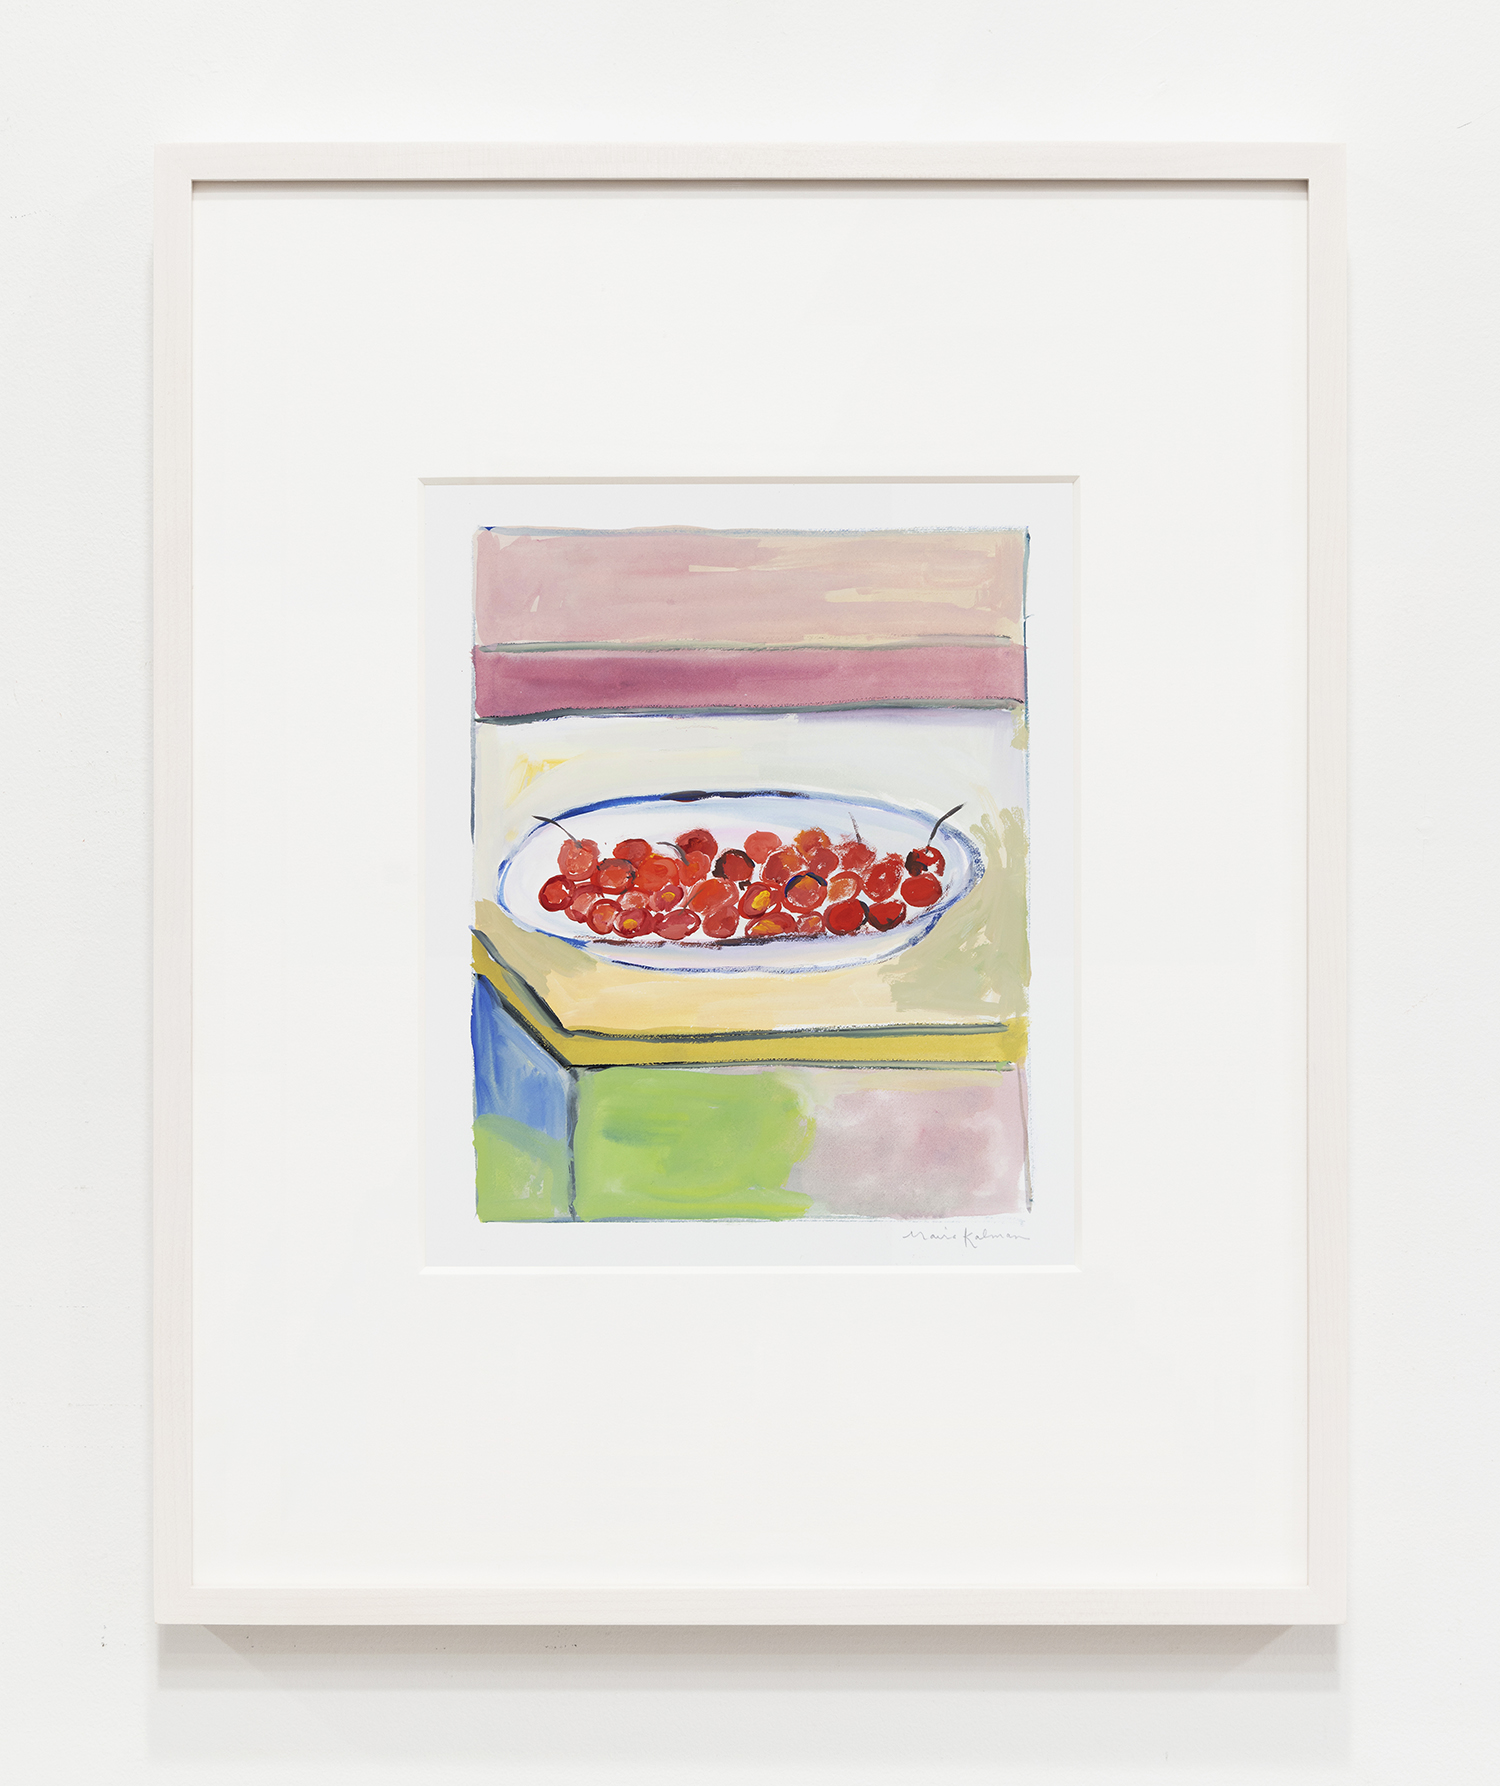 Maira Kalman Cézanne's Cherries, 2022 Gouache Image Dimensions: 9 3/4 x 7 1/2 inches (24.8 x 19.1 cm) Framed Dimensions: 20 x 16 inches (50.8 x 40.6 cm)